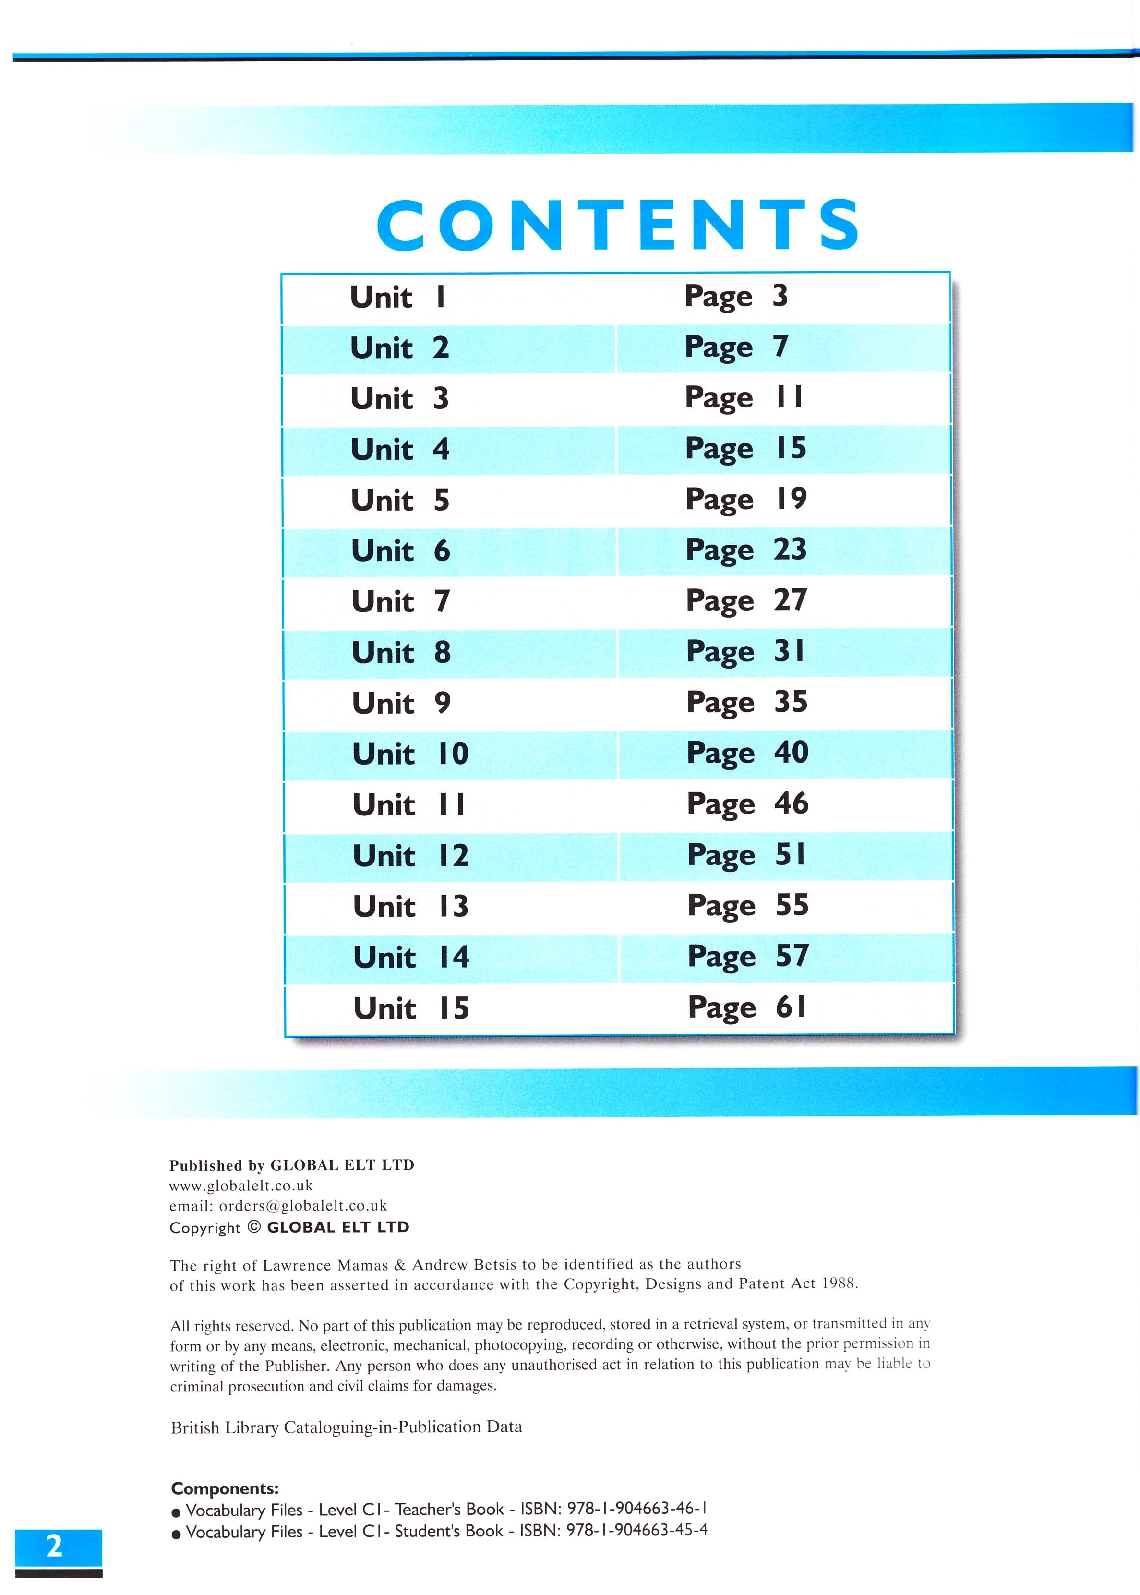 Sách The Vocabulary files C1 PDF | Xem online, tải PDF miễn phí (trang 2)